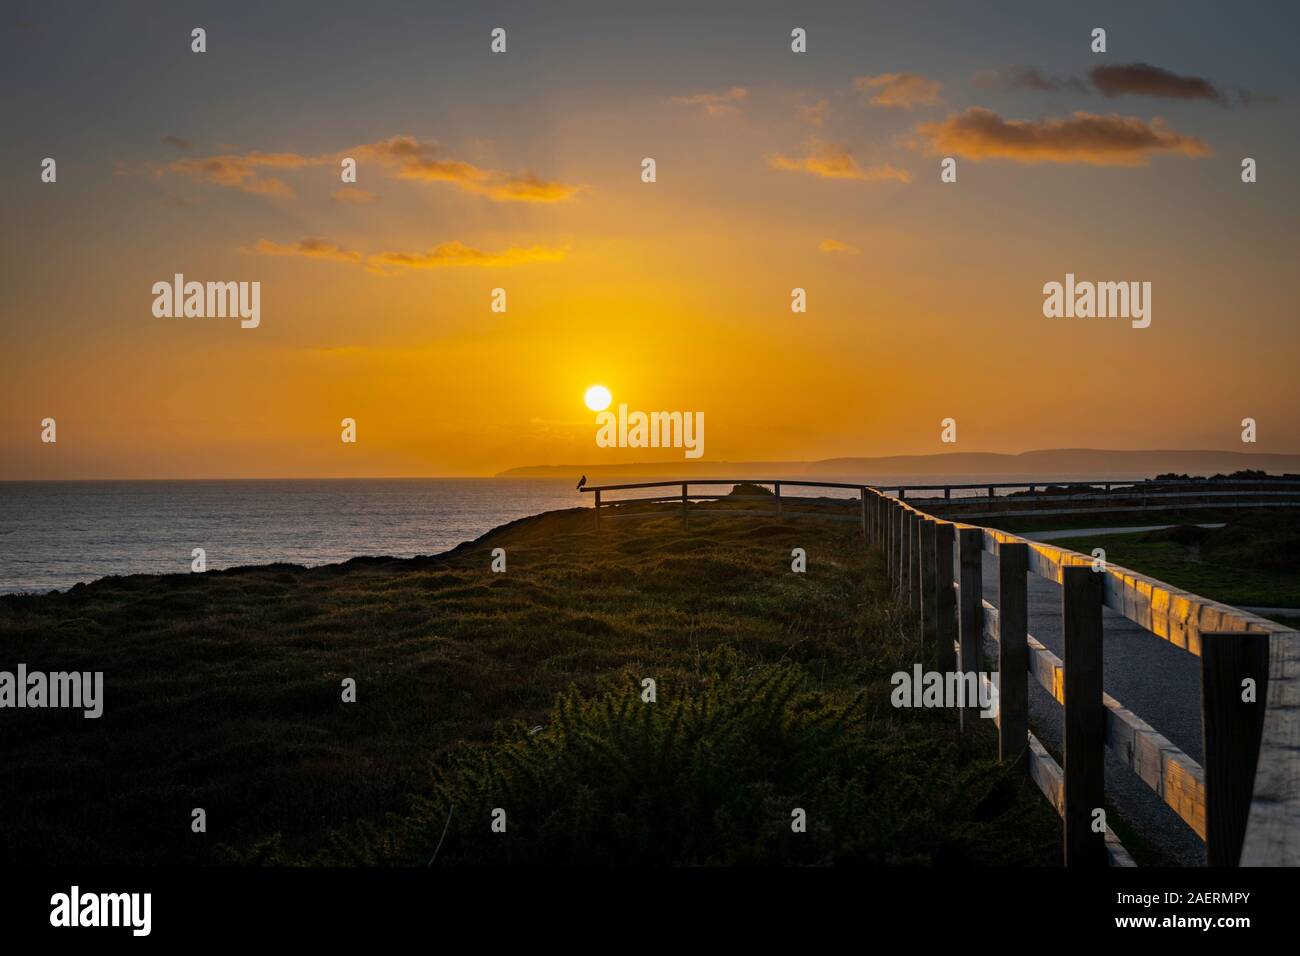 Sonnenuntergang am Hengistbury Head mit dem Heidekraut und Küsten Zaun sanft illuminierten in niedrigen Sonnen Strahlen Stockfoto